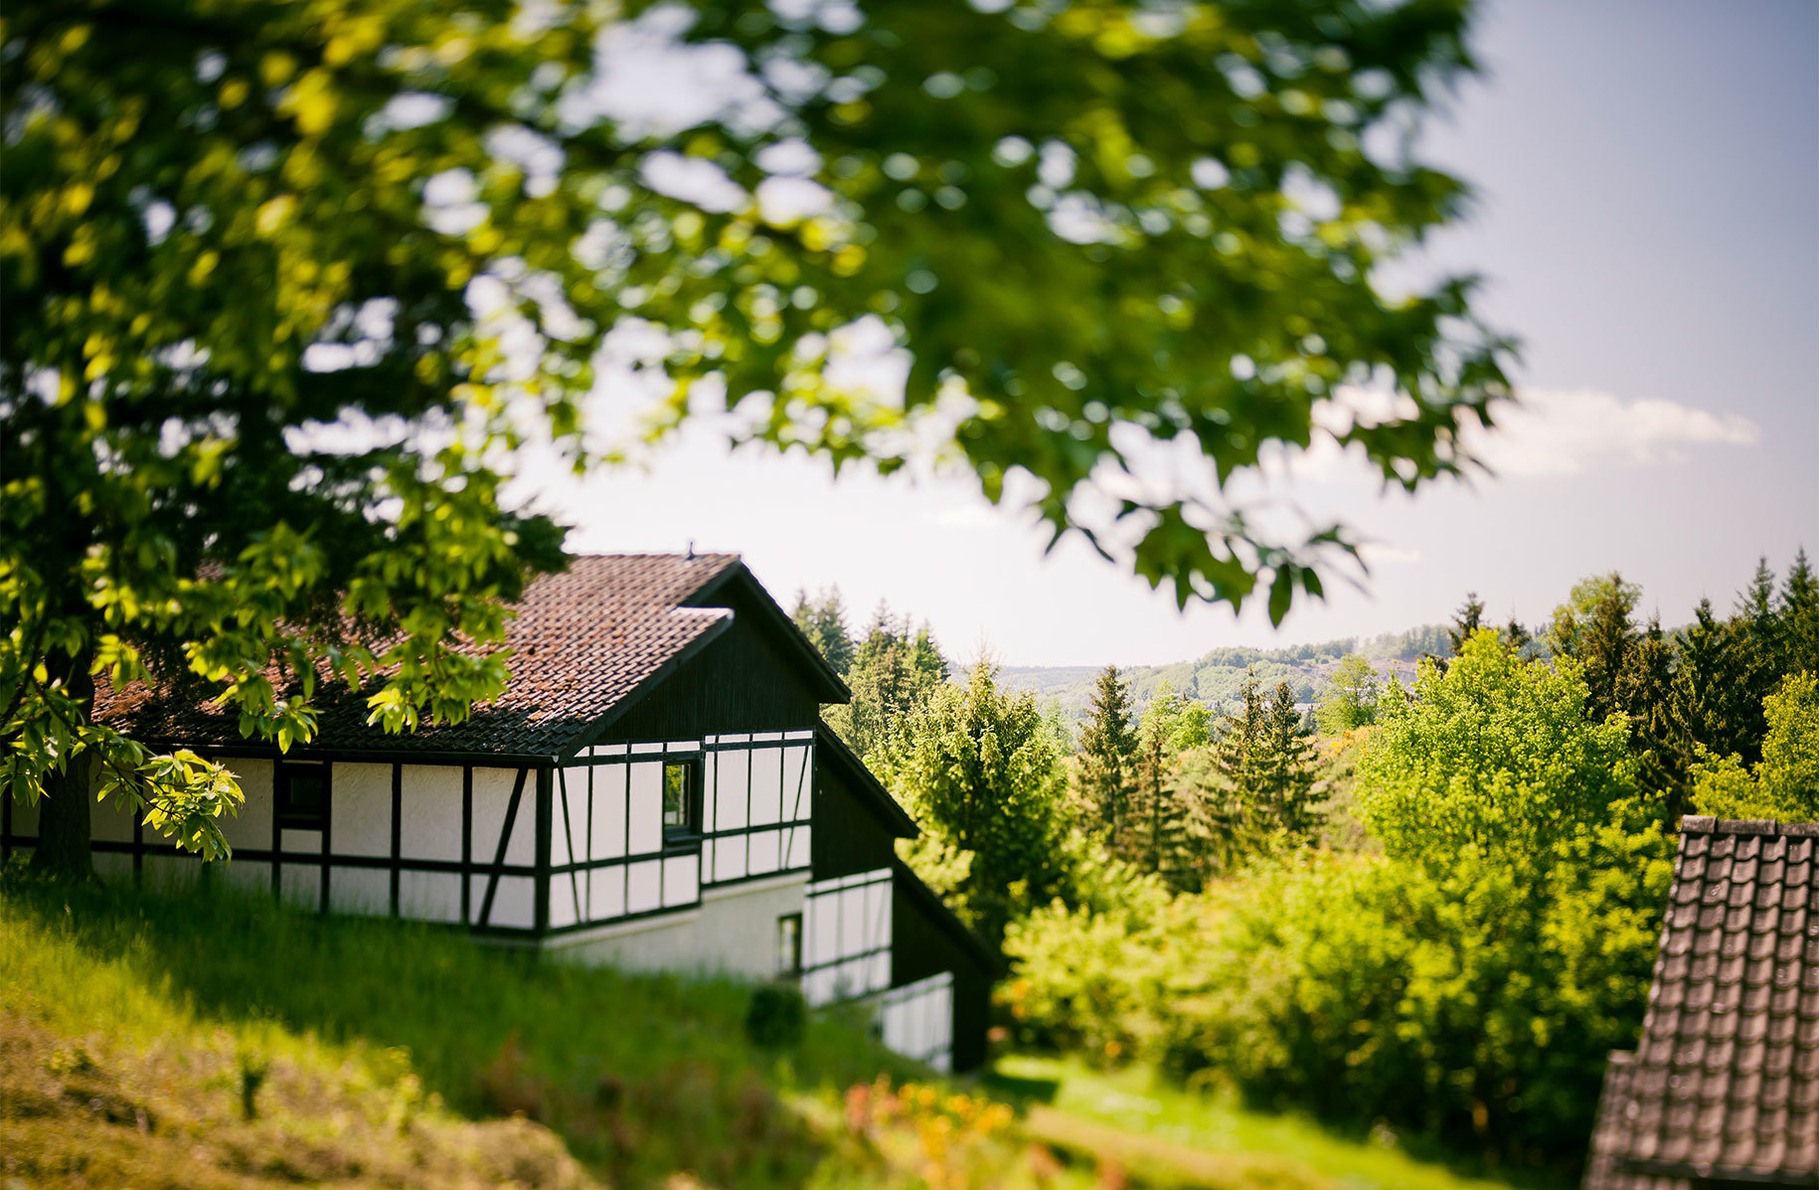 Ferienhaus "Ahorn" 1 Ferienhaus in der Eifel